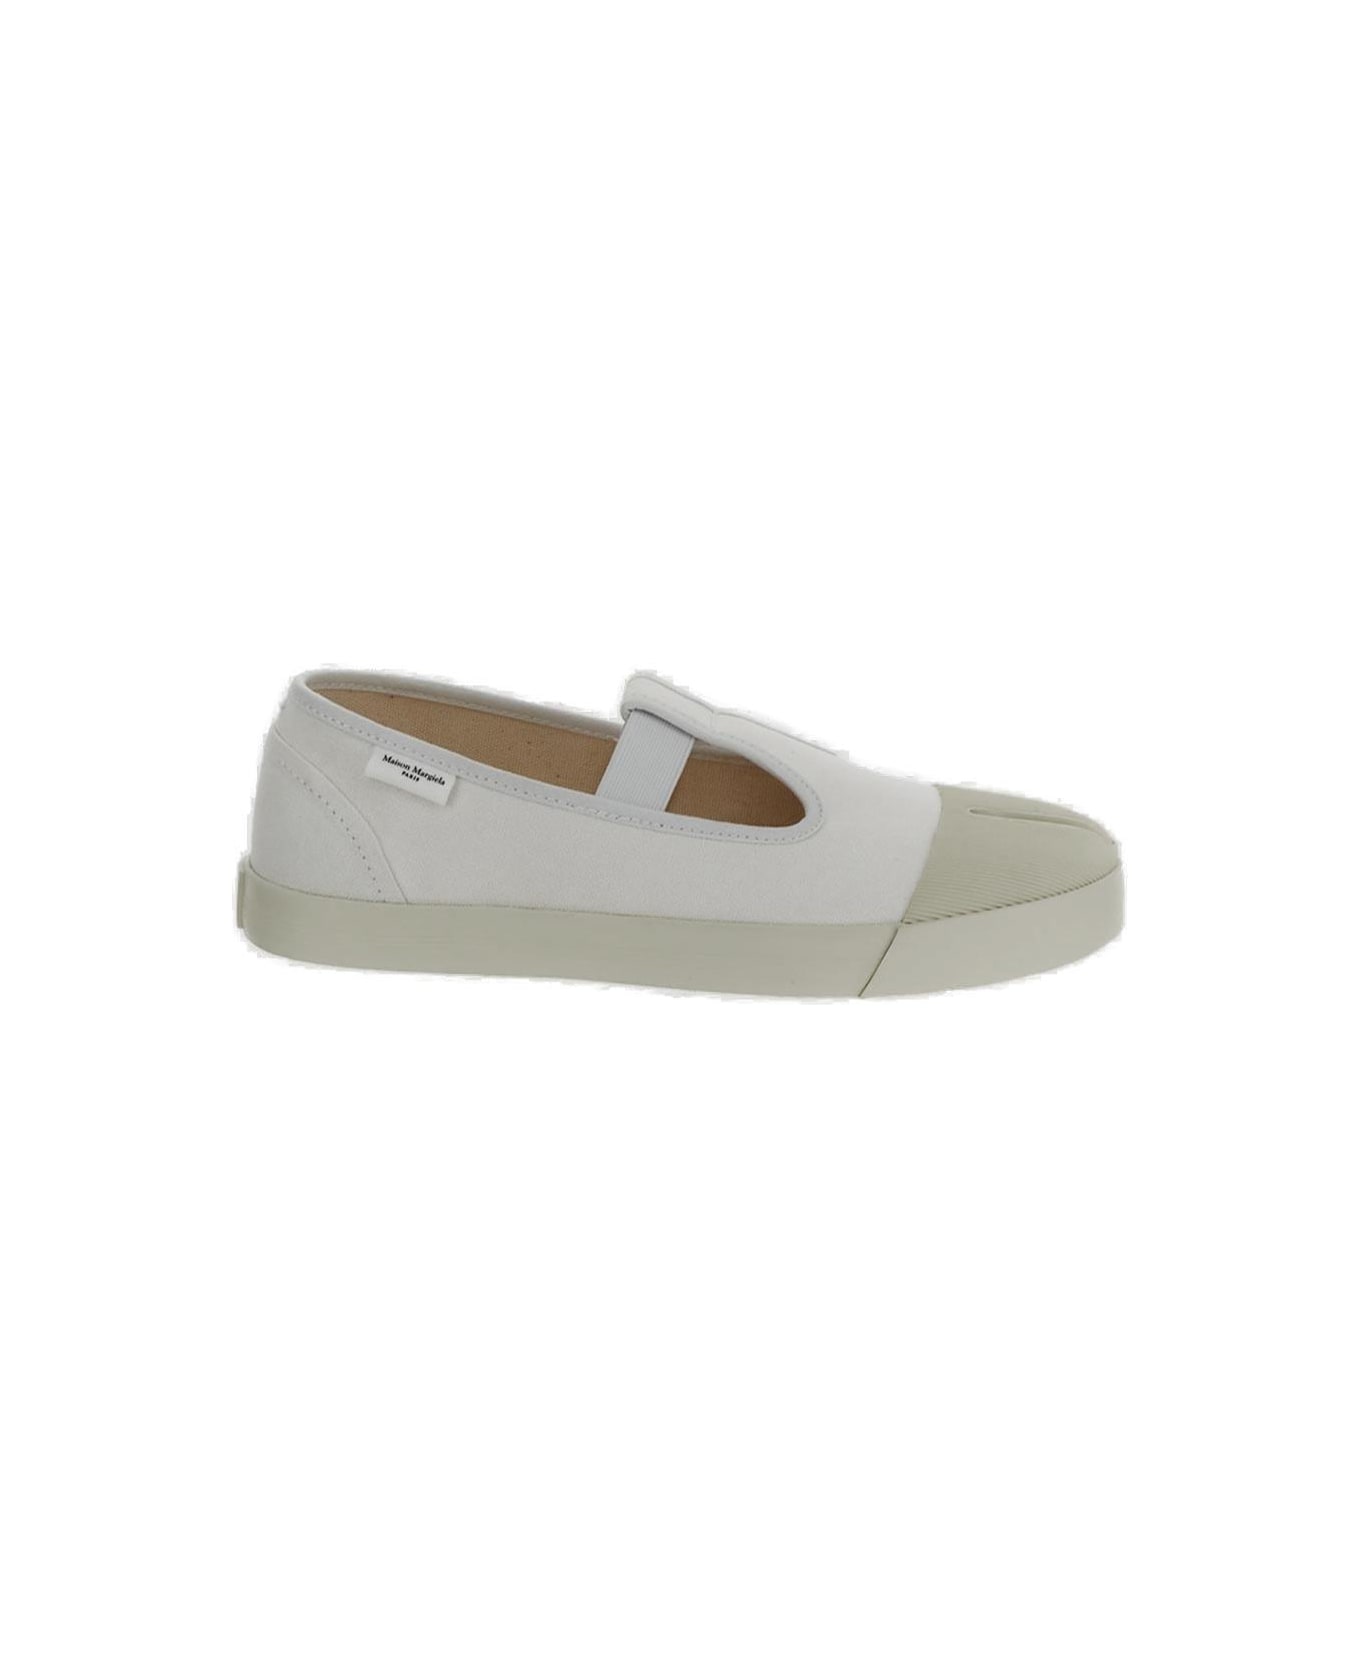 Maison Margiela On The Deck Tabi Mary Jane Shoes - WHITE フラットシューズ